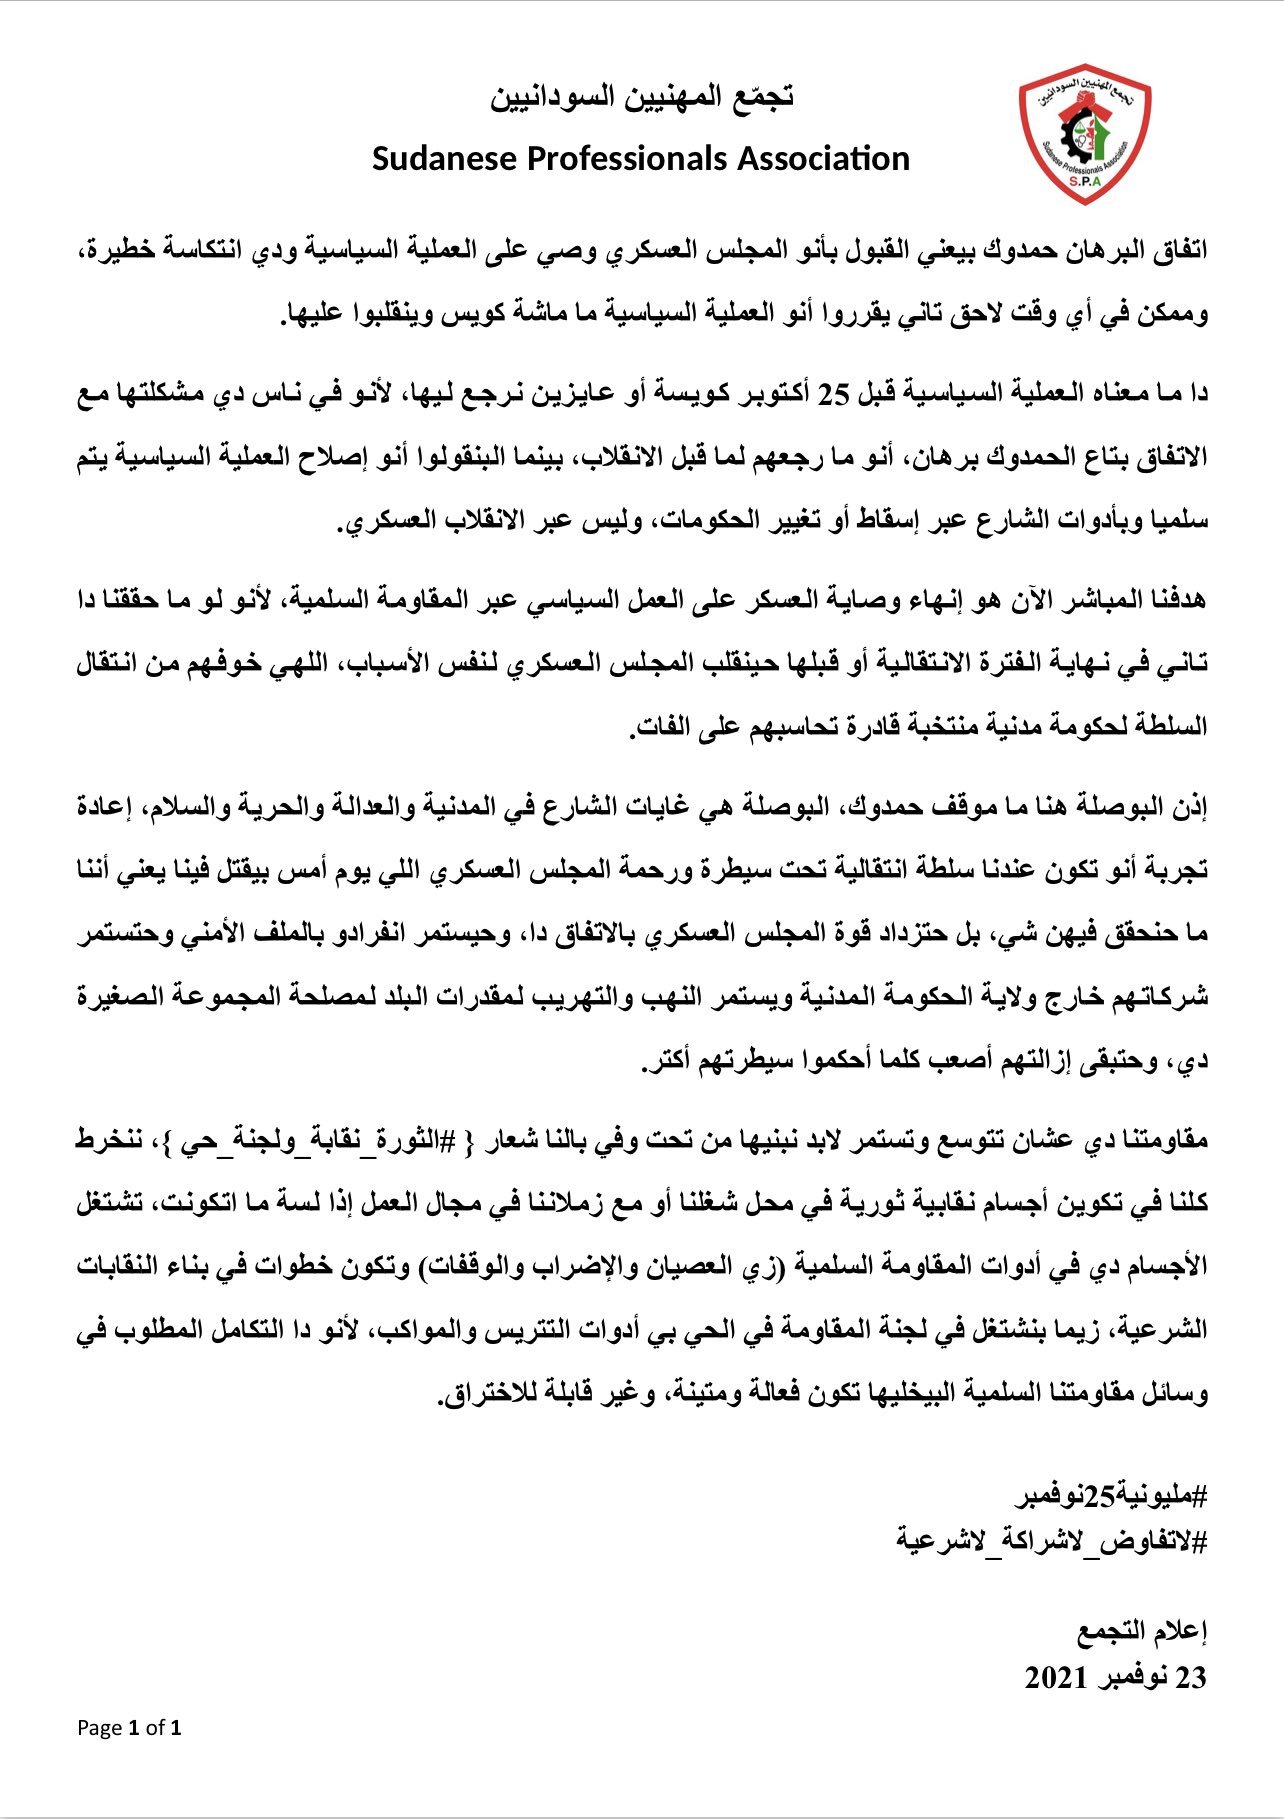 تجمع المهنيين السودانيين : اتفاق البرهان حمدوك وصاية من المجلس العسكري ويتخوف من انقلاب جديد